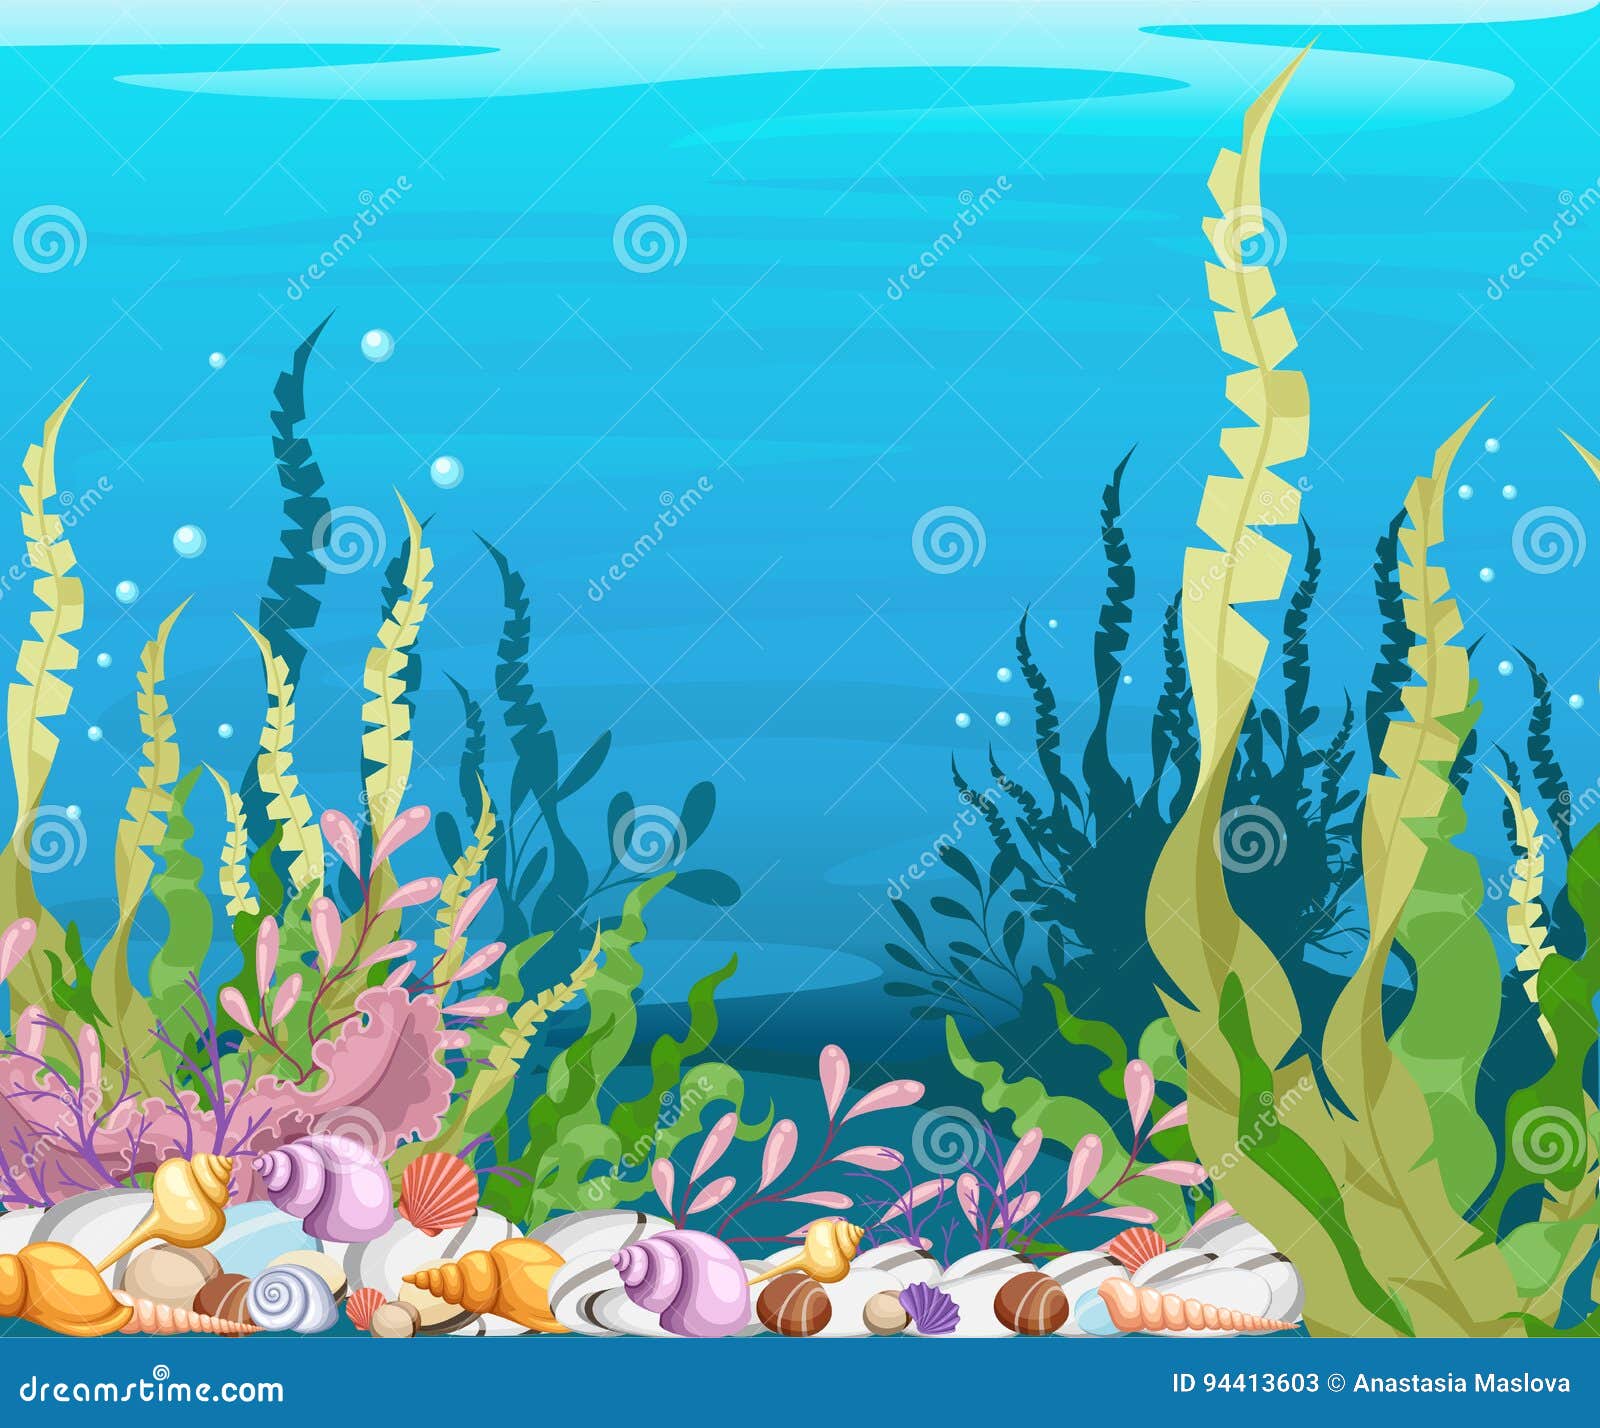 Thế giới dưới đại dương luôn ẩn chứa những sinh vật kì diệu. Hãy đến với hình ảnh về các loài sinh vật biển để khám phá thêm về đại dương thần bí này.